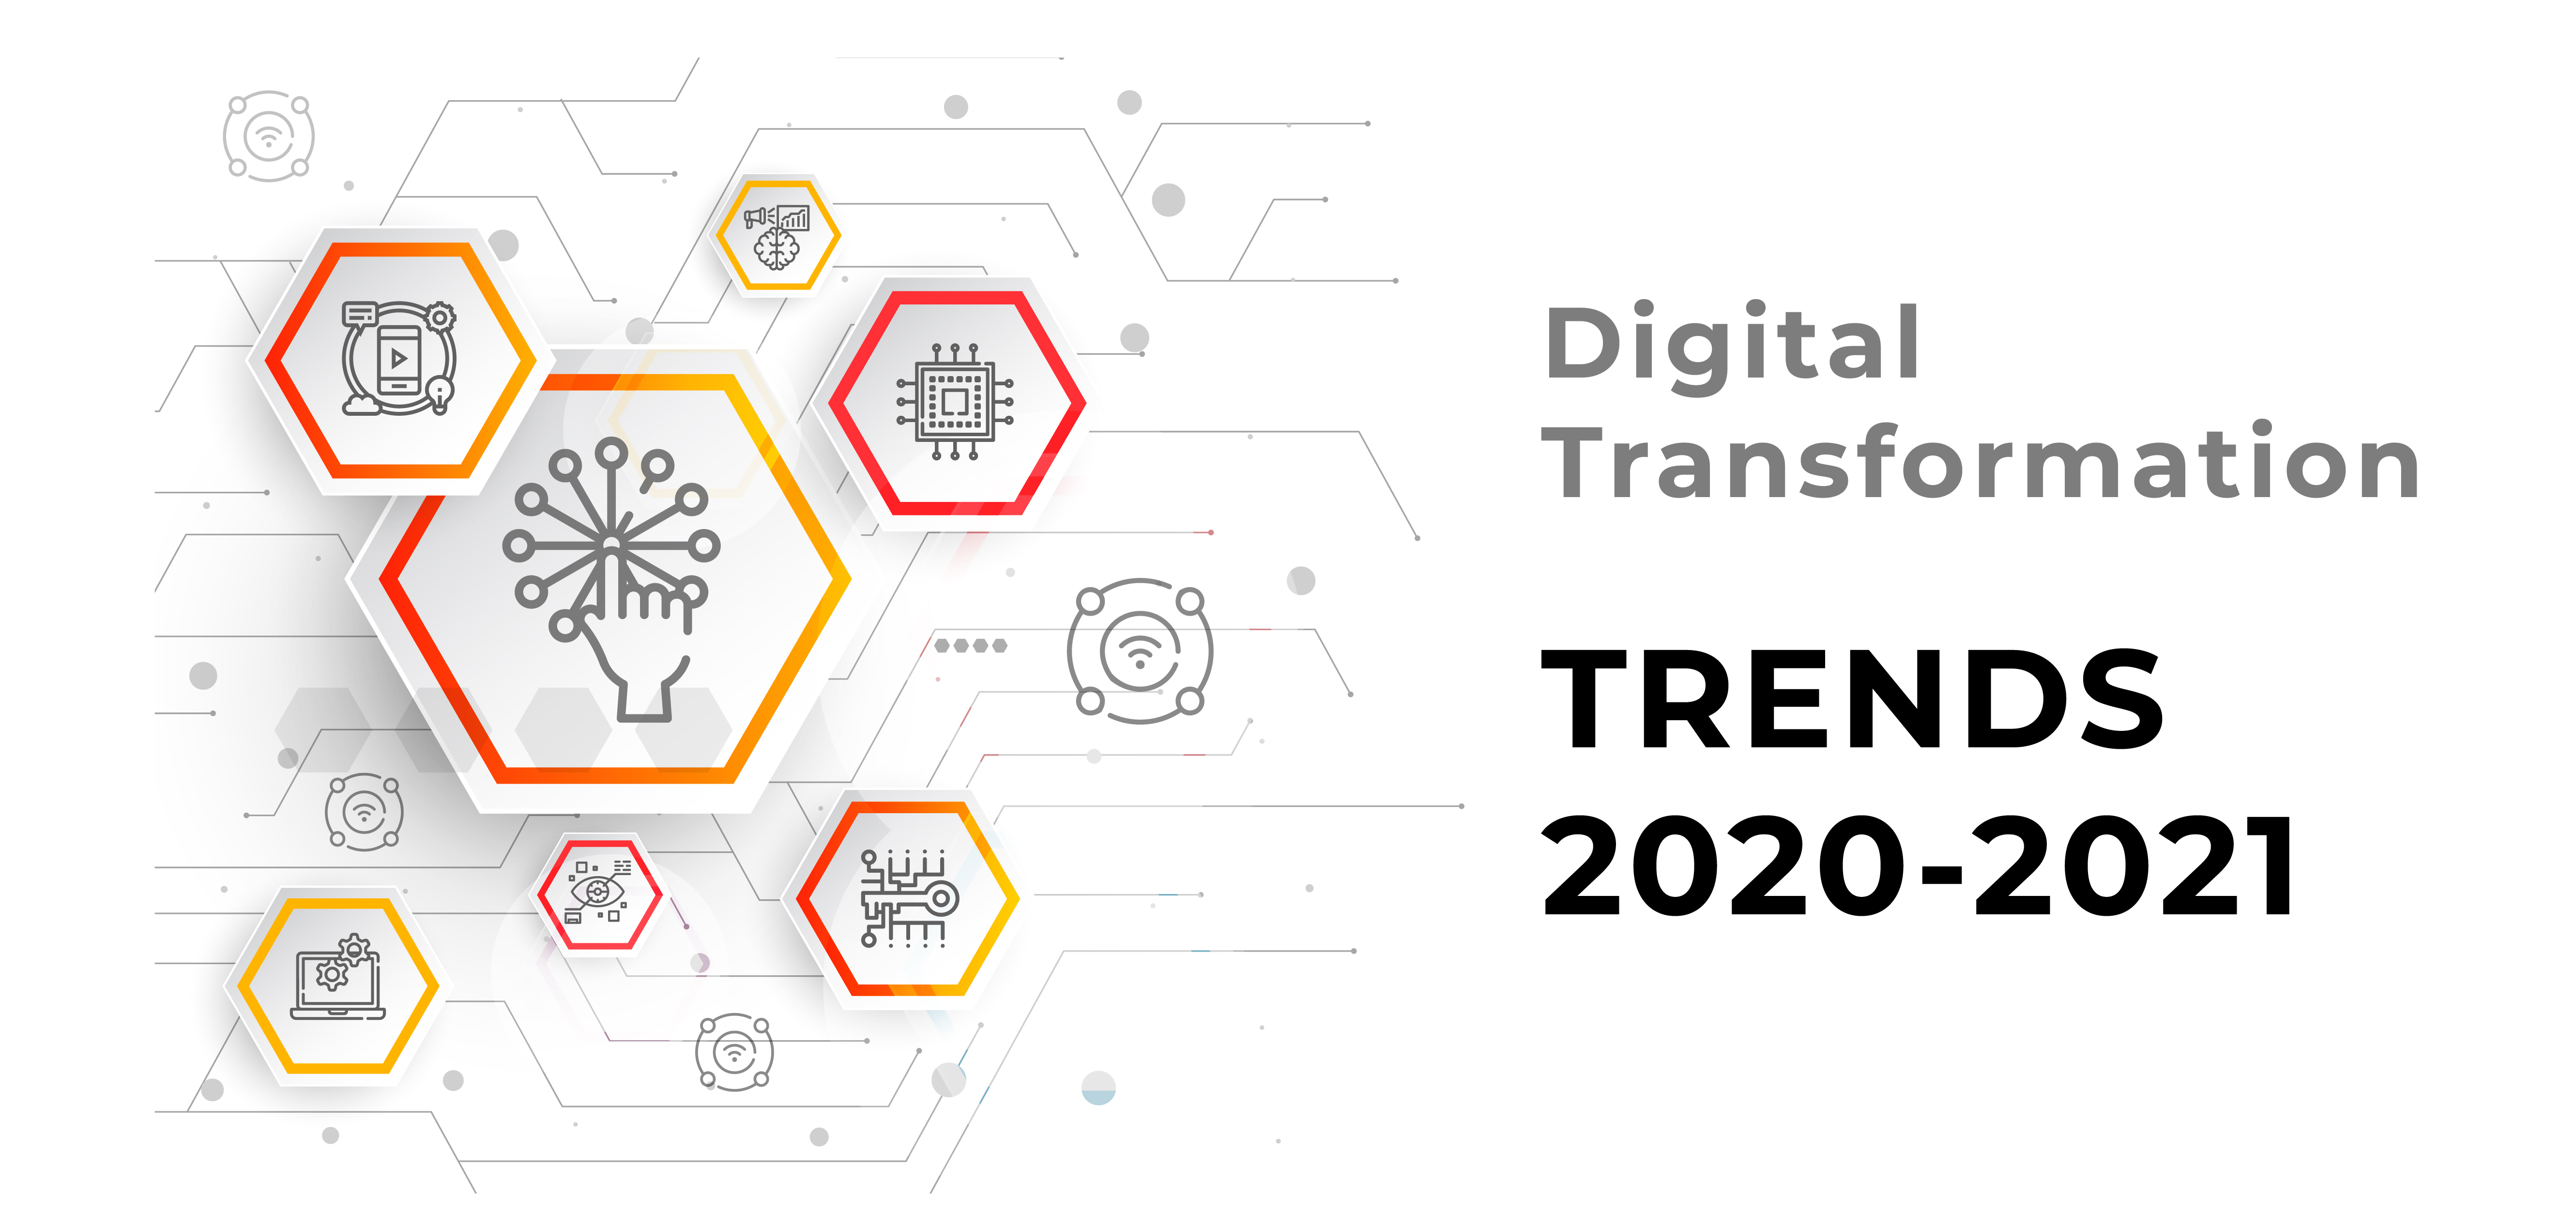 Digital Transformation trends 2020-2021.jpg